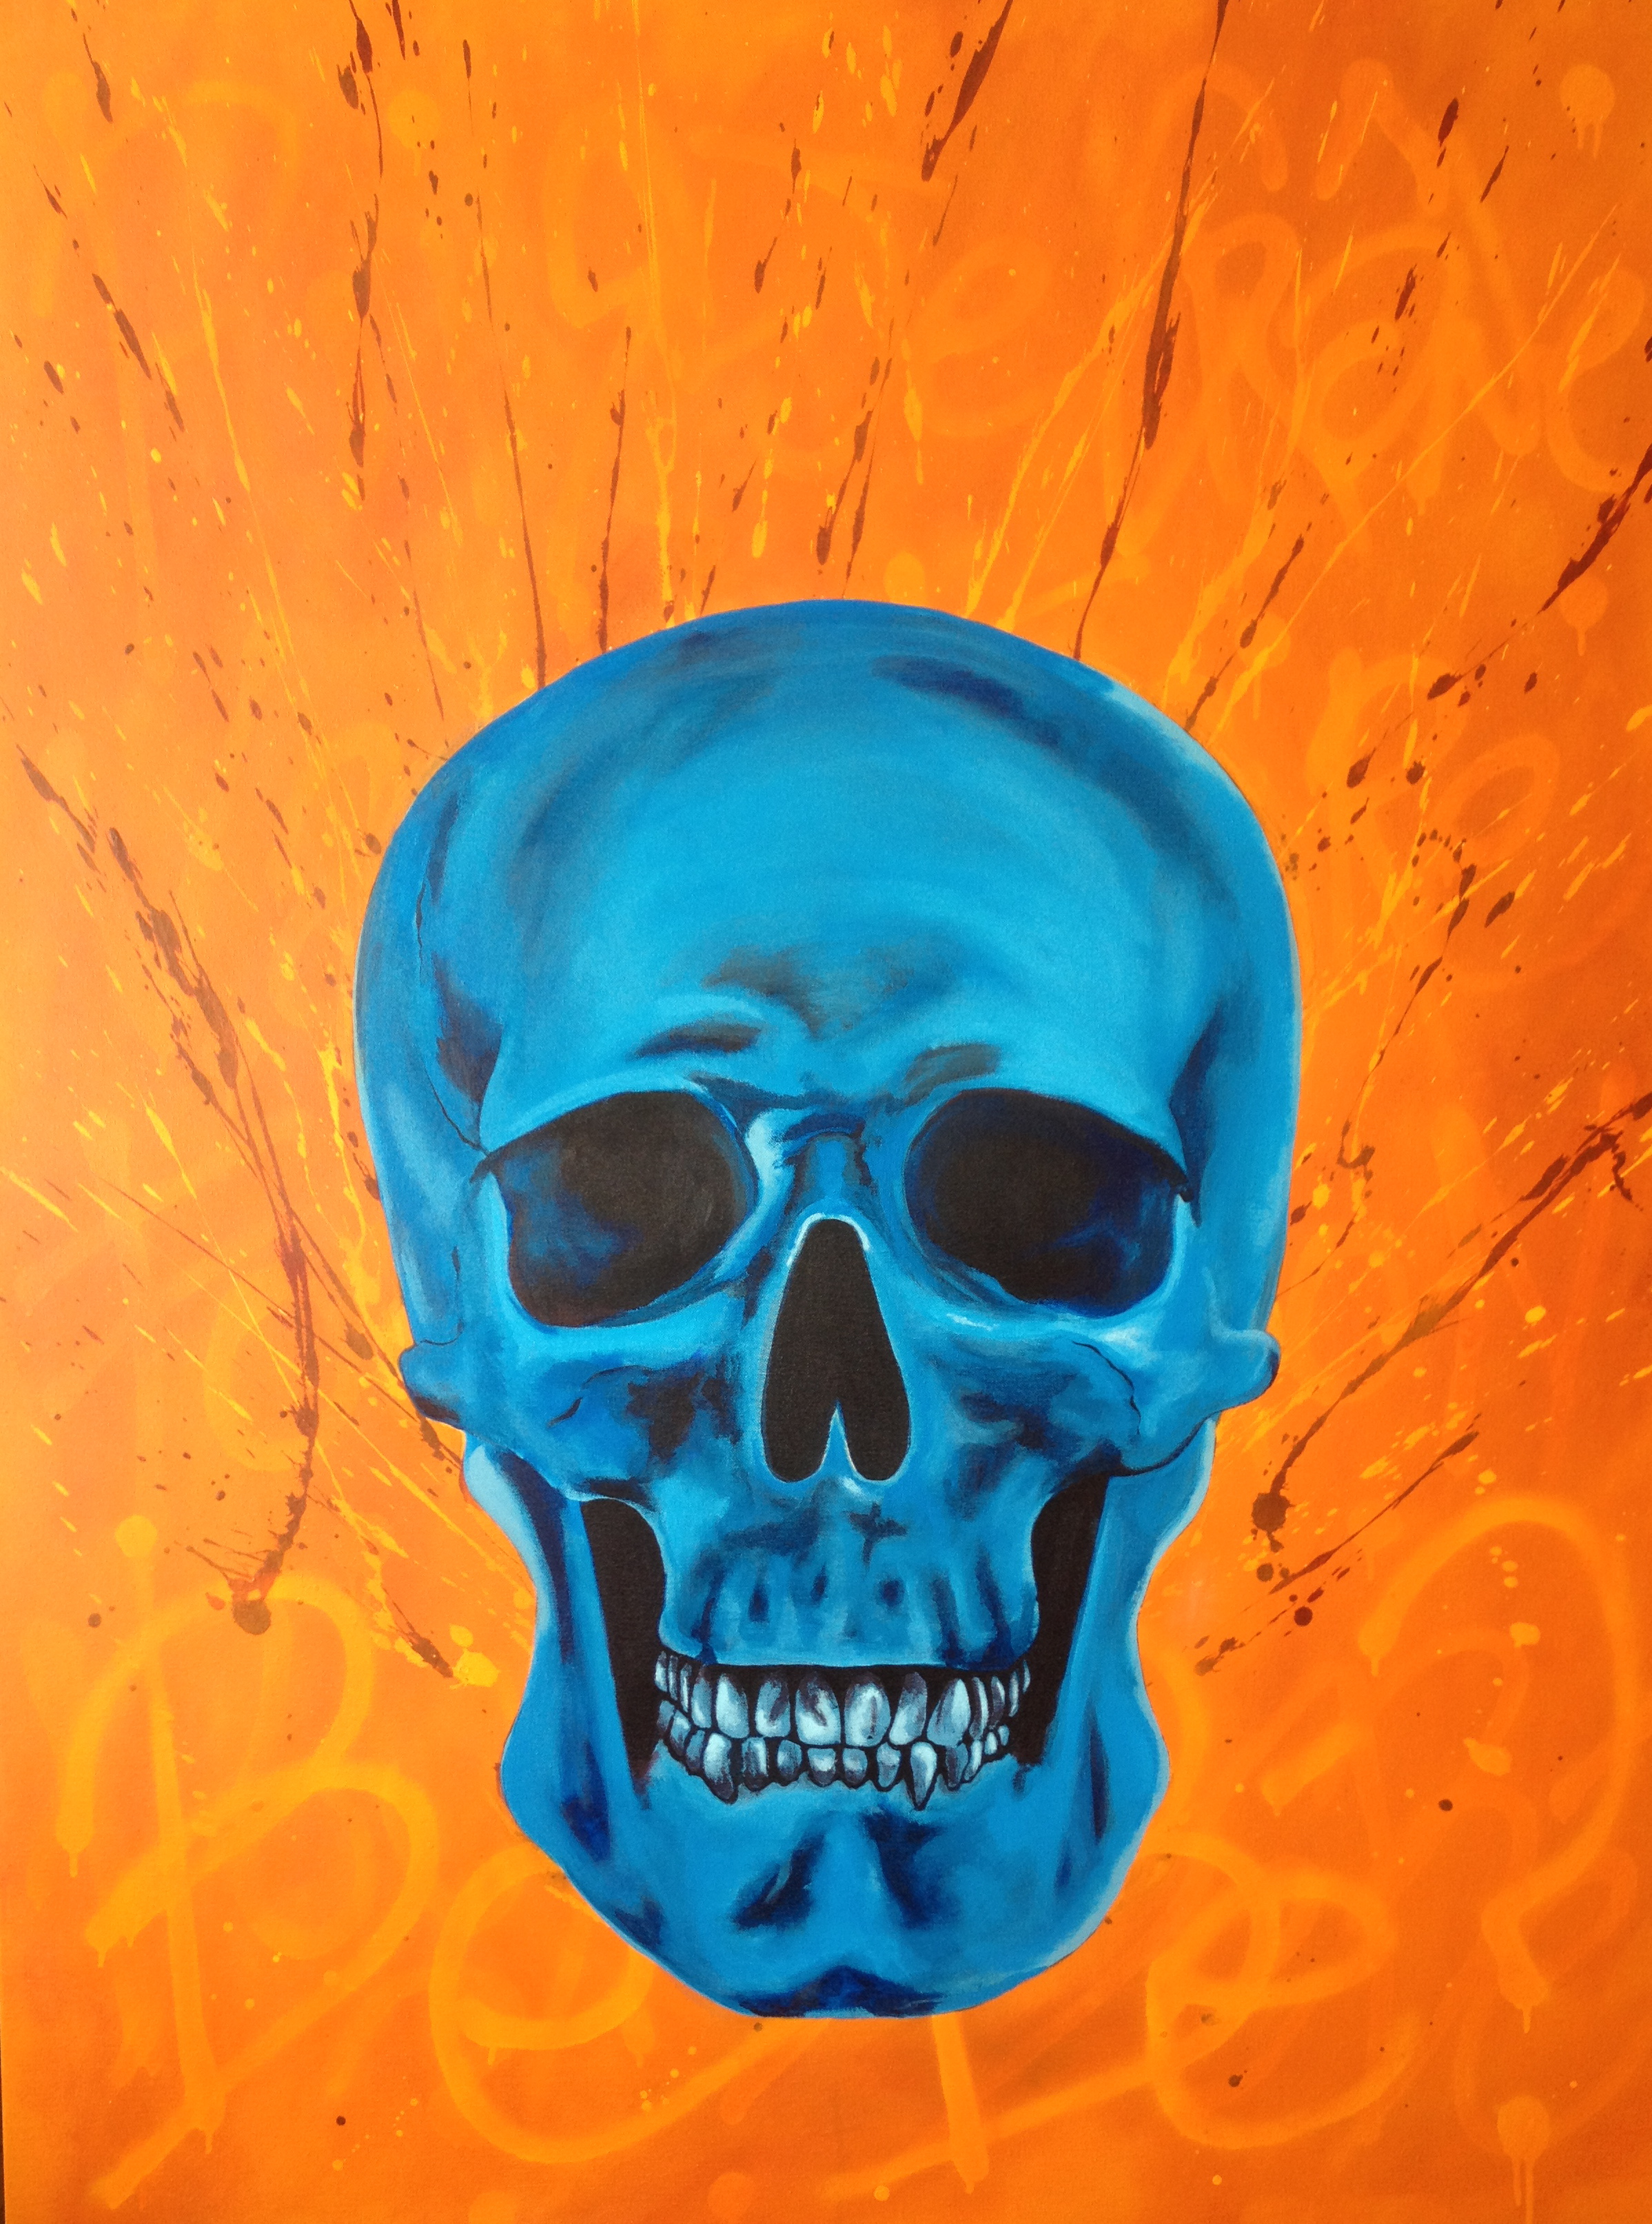   Blue Skull  - acrylic on canvas 36" x 48" 